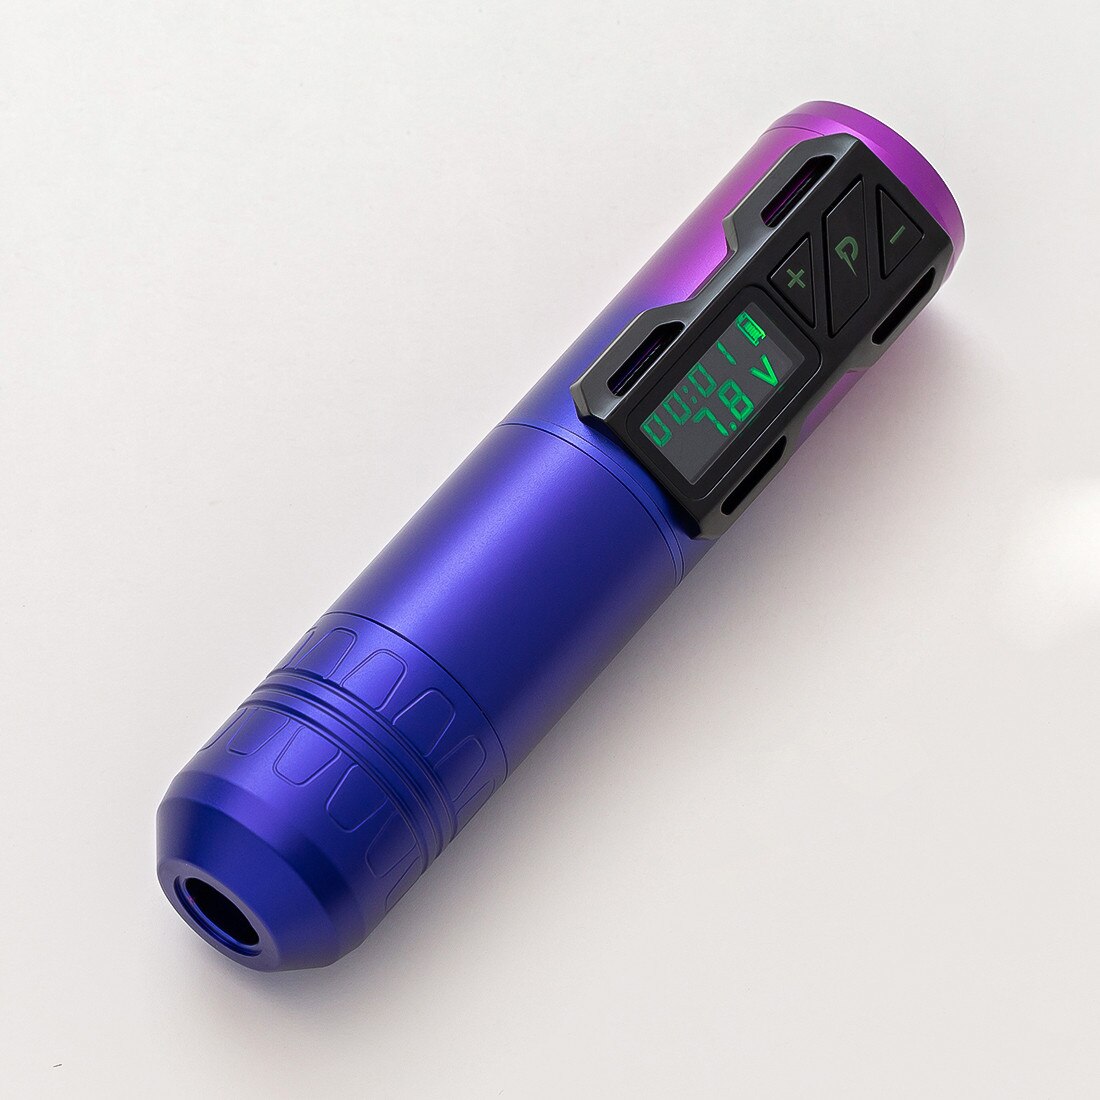 EZ Portex Generation 2S (P2S) 4.0mm - Rouse purple